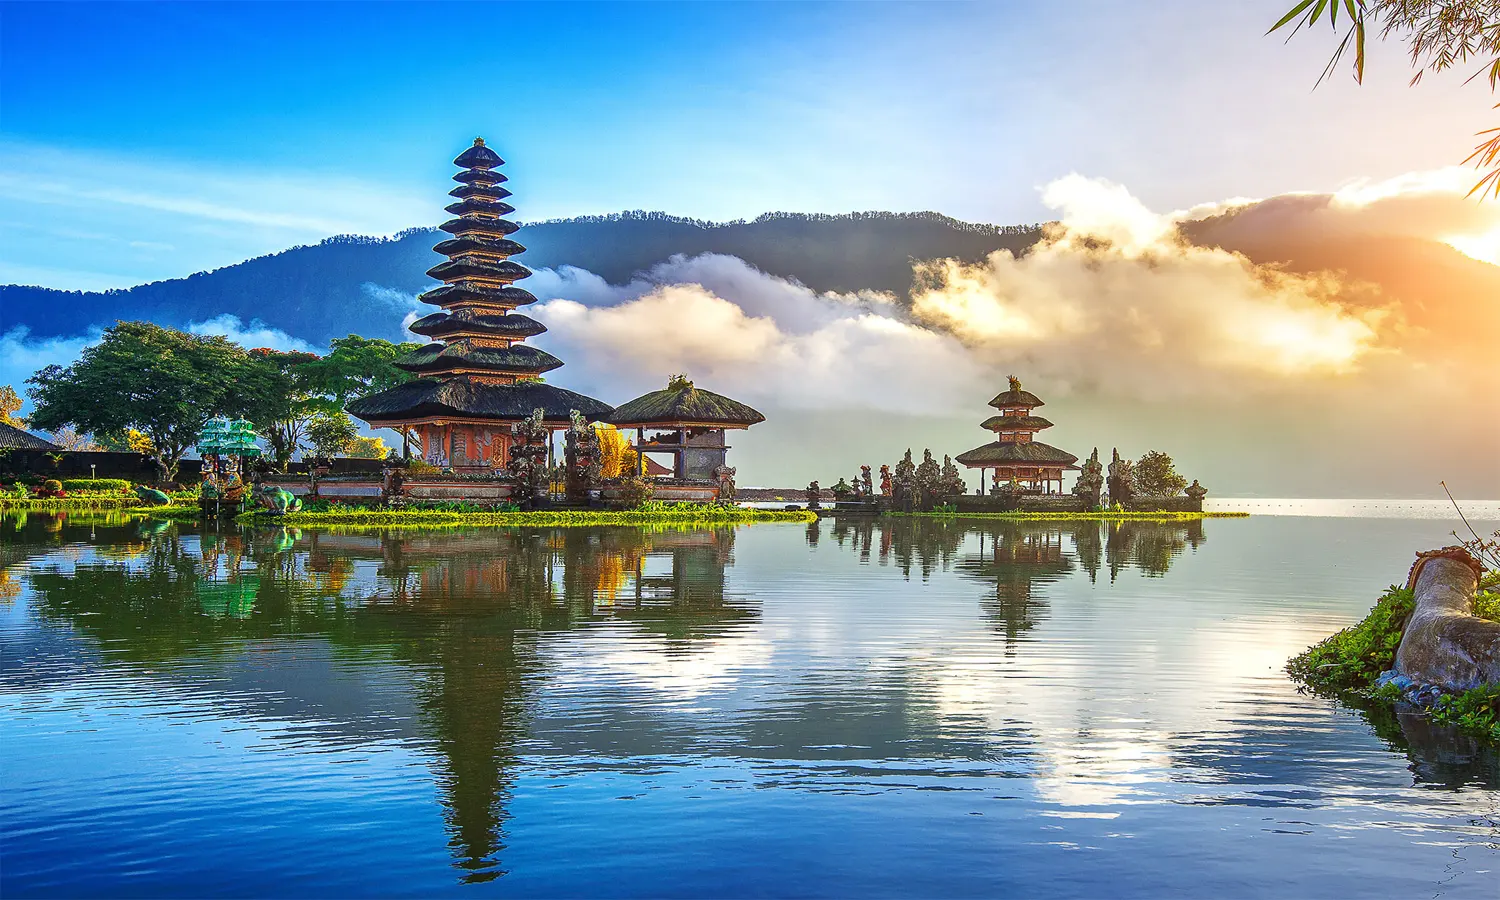 6 Objek Wisata Pulau Dewata Bali yang Wajib Kamu Jelajahi! - Parboaboa